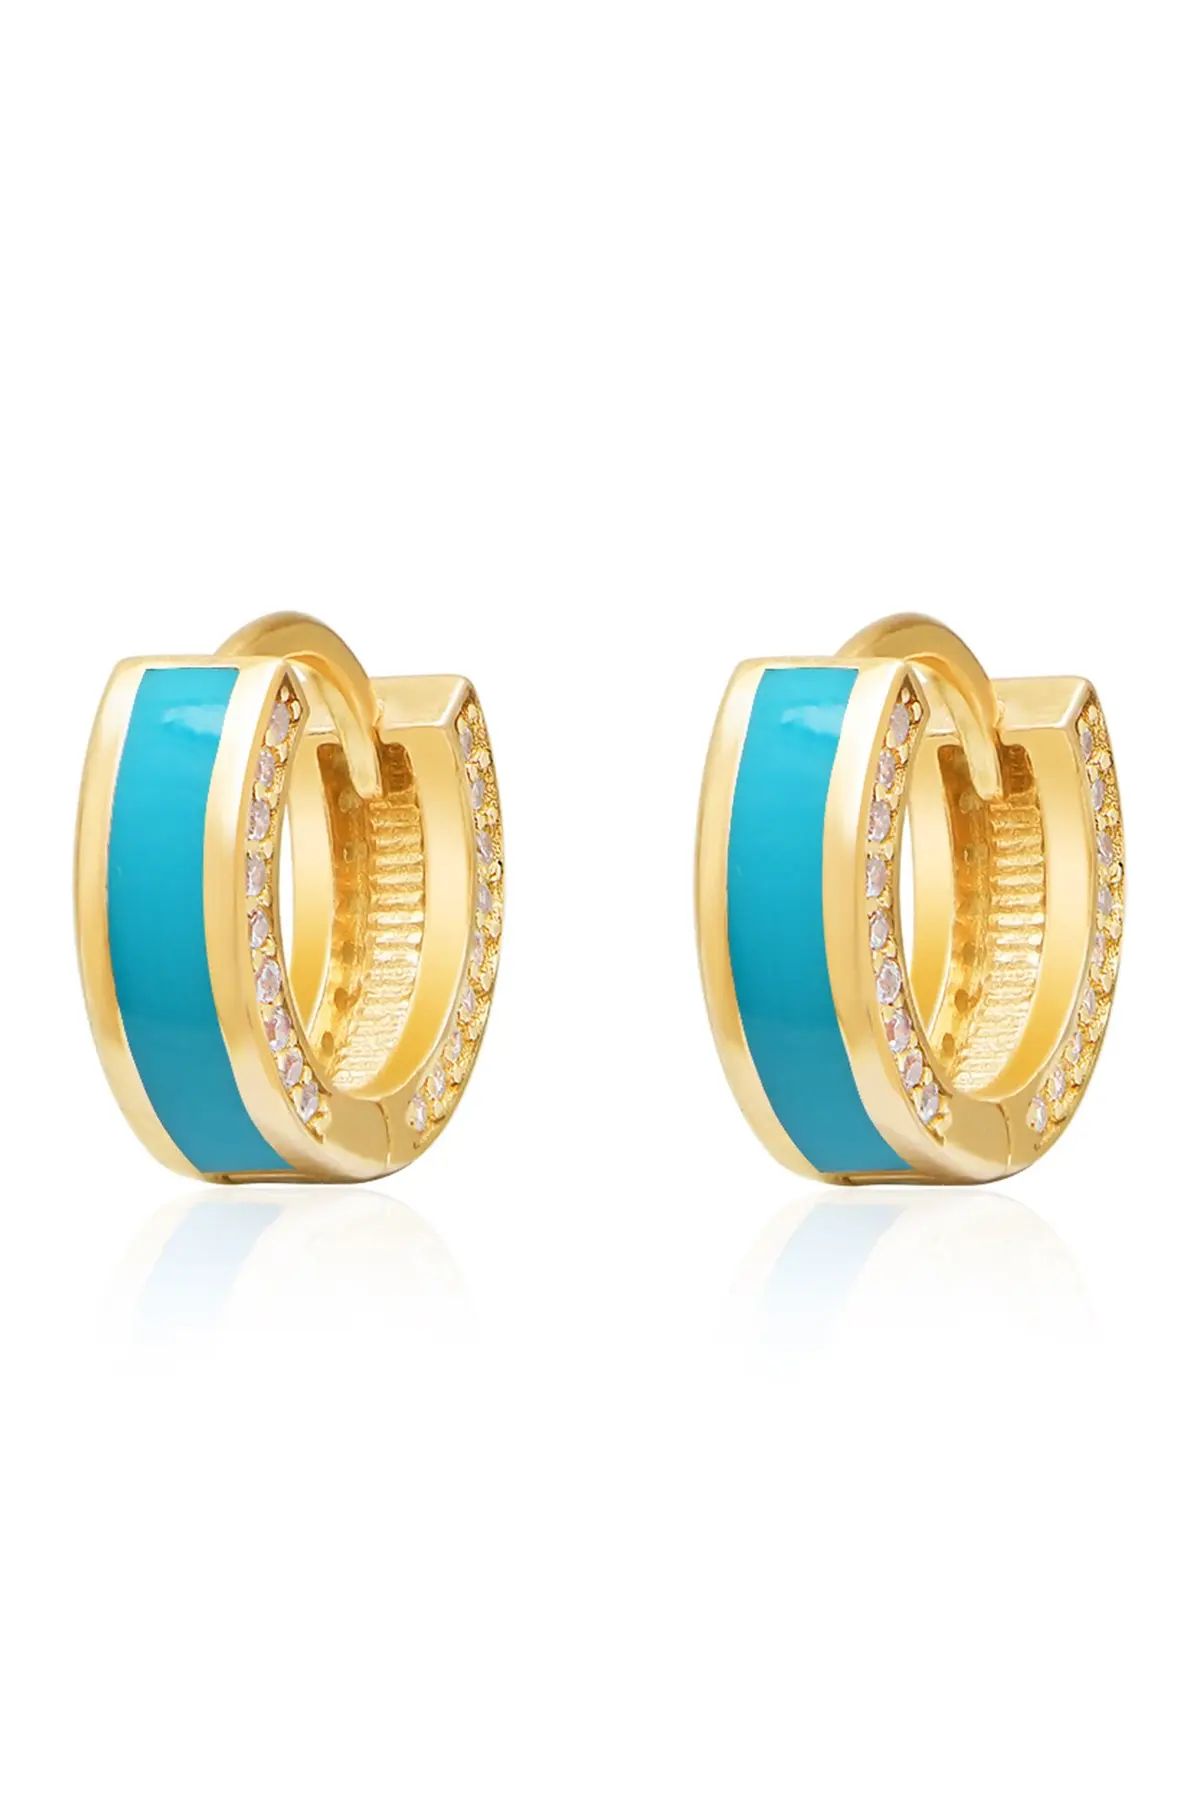 Gab+Cos Designs 14K Gold Plated Candy Blue Hoop Earrings at Nordstrom Rack | Nordstrom Rack